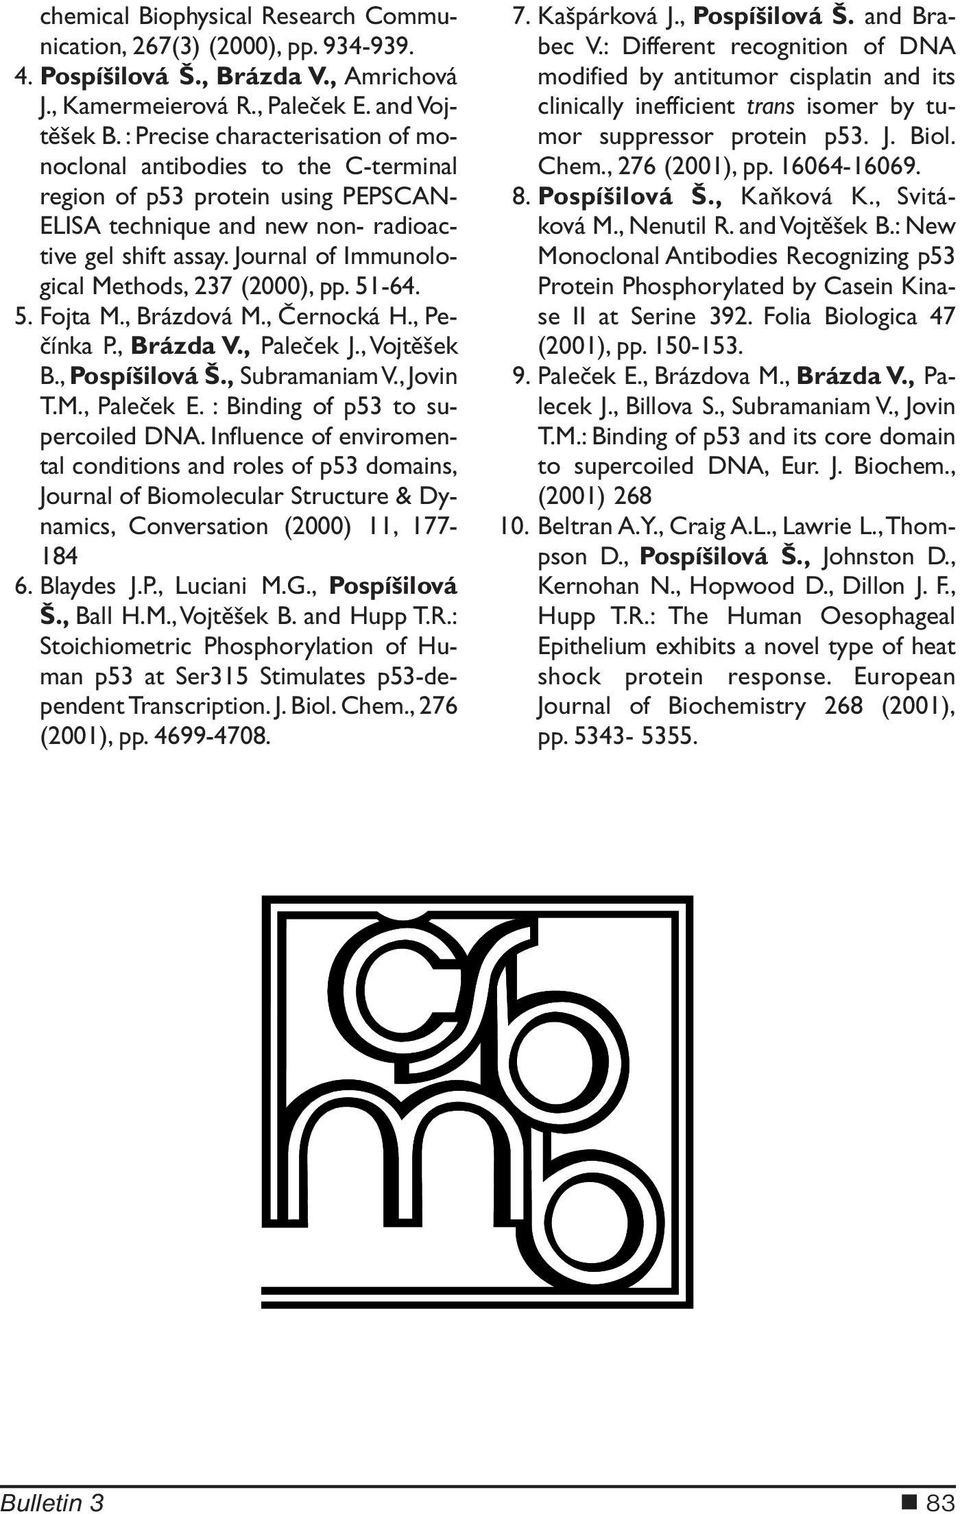 Journal of Immunological Methods, 237 (2000), pp. 51-64. 5. Fojta M., Brázdová M., Černocká H., Pečínka P., Brázda V., Paleček J., Vojtěšek B., Pospíšilová Š., Subramaniam V., Jovin T.M., Paleček E.